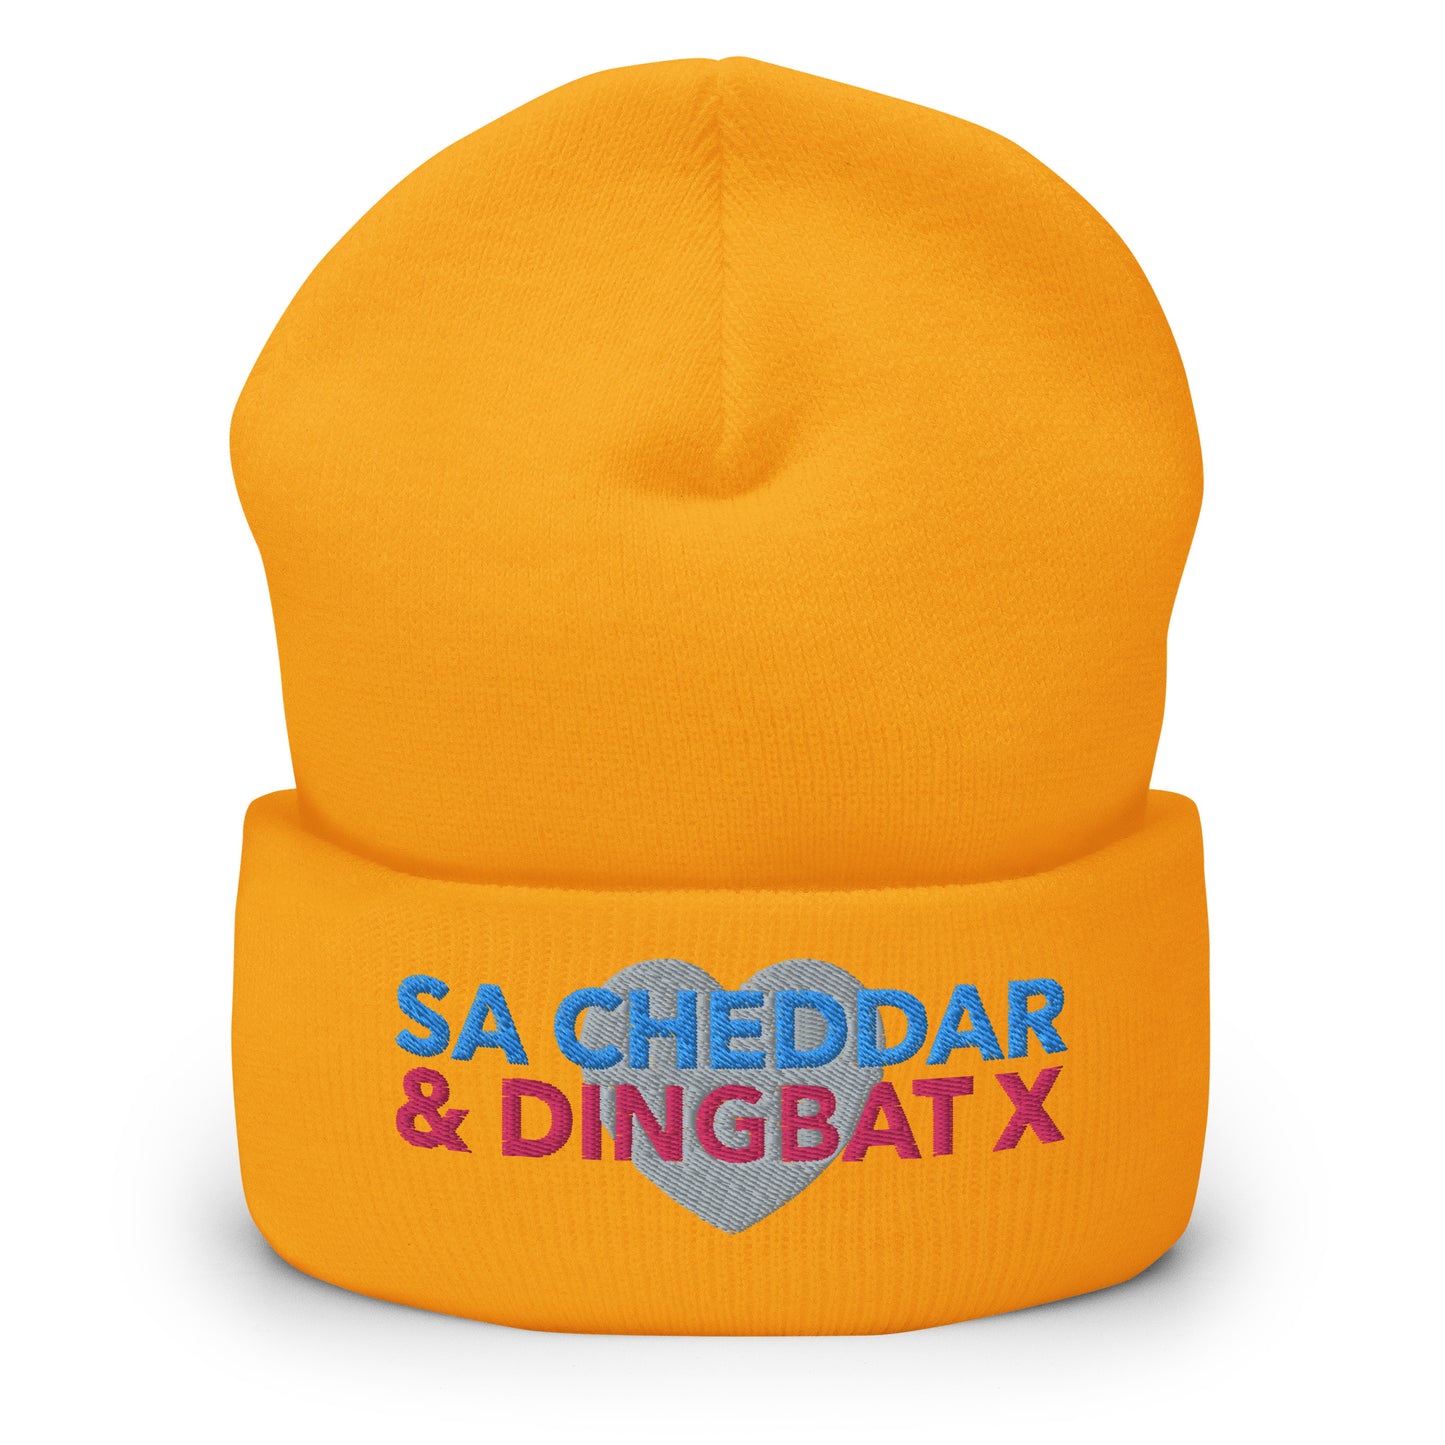 SA CHEDDAR & DINGBAT X Cuffed Beanie